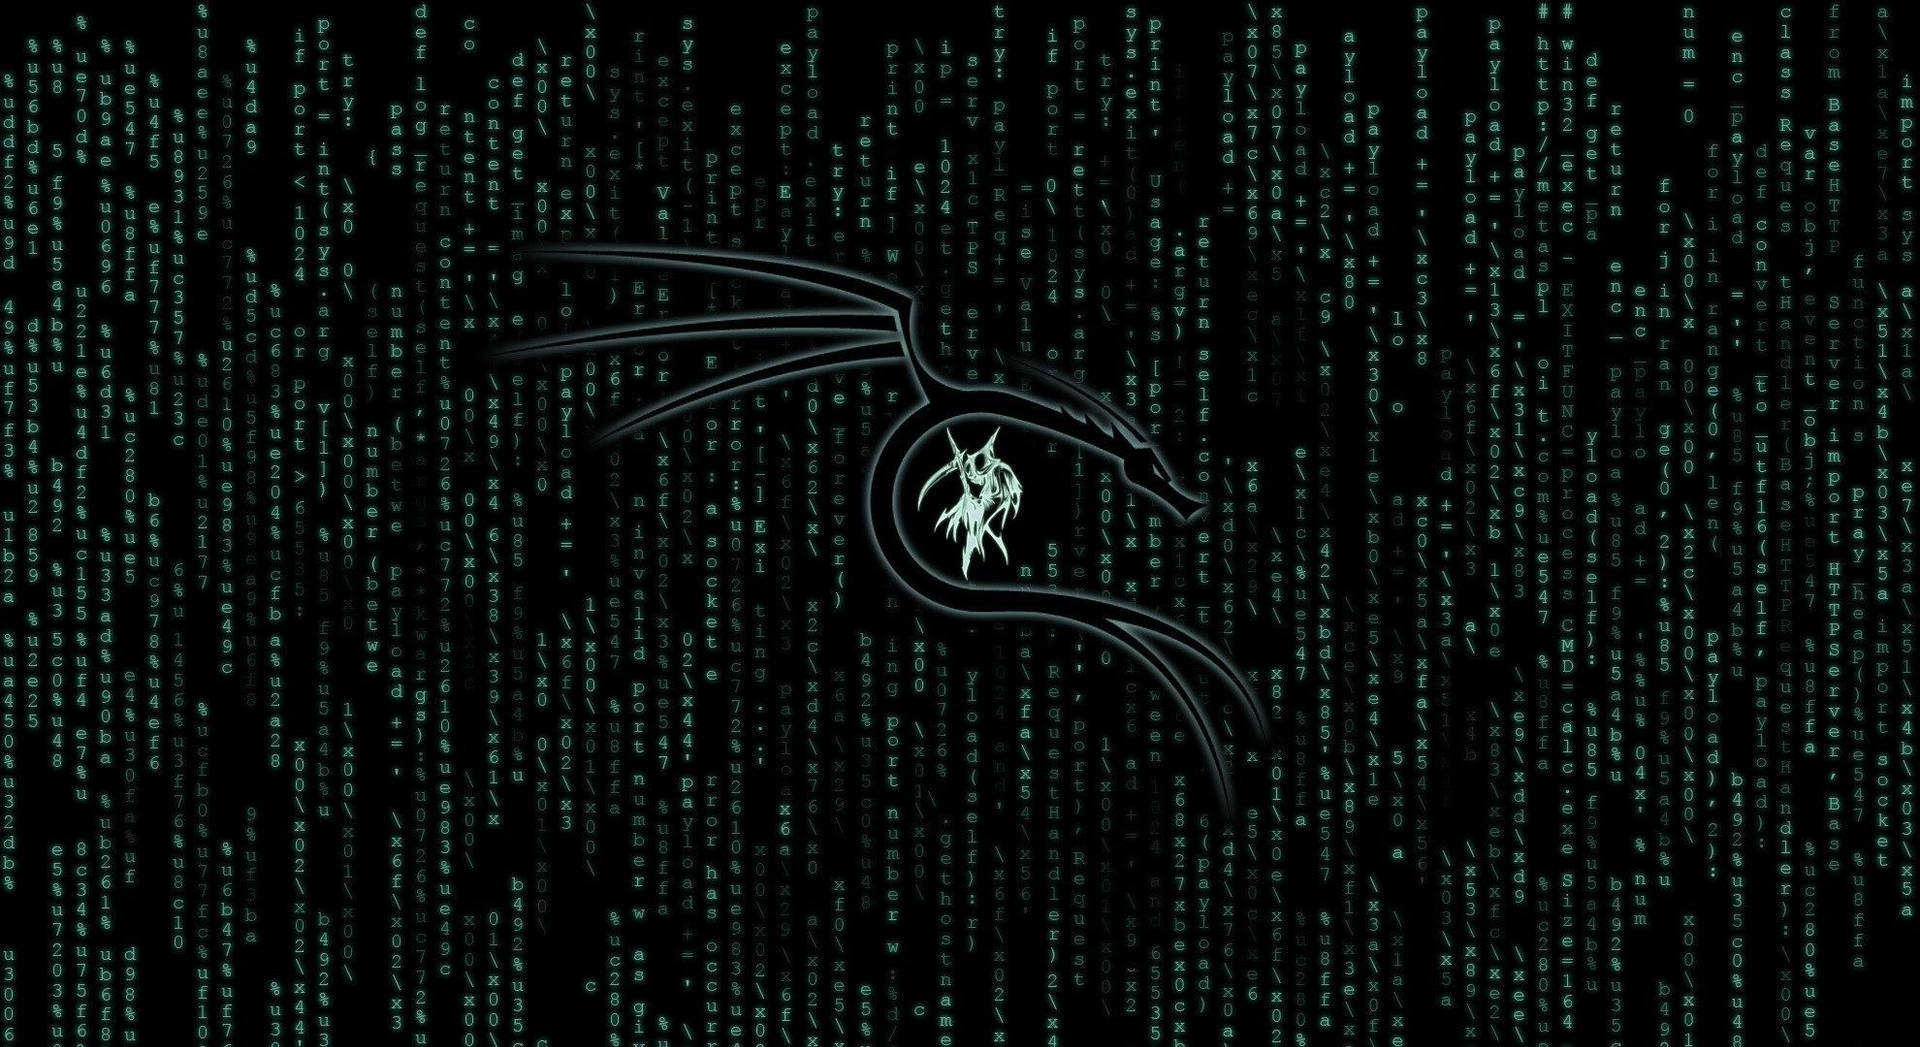 Koder Af Kali Linux Wallpaper